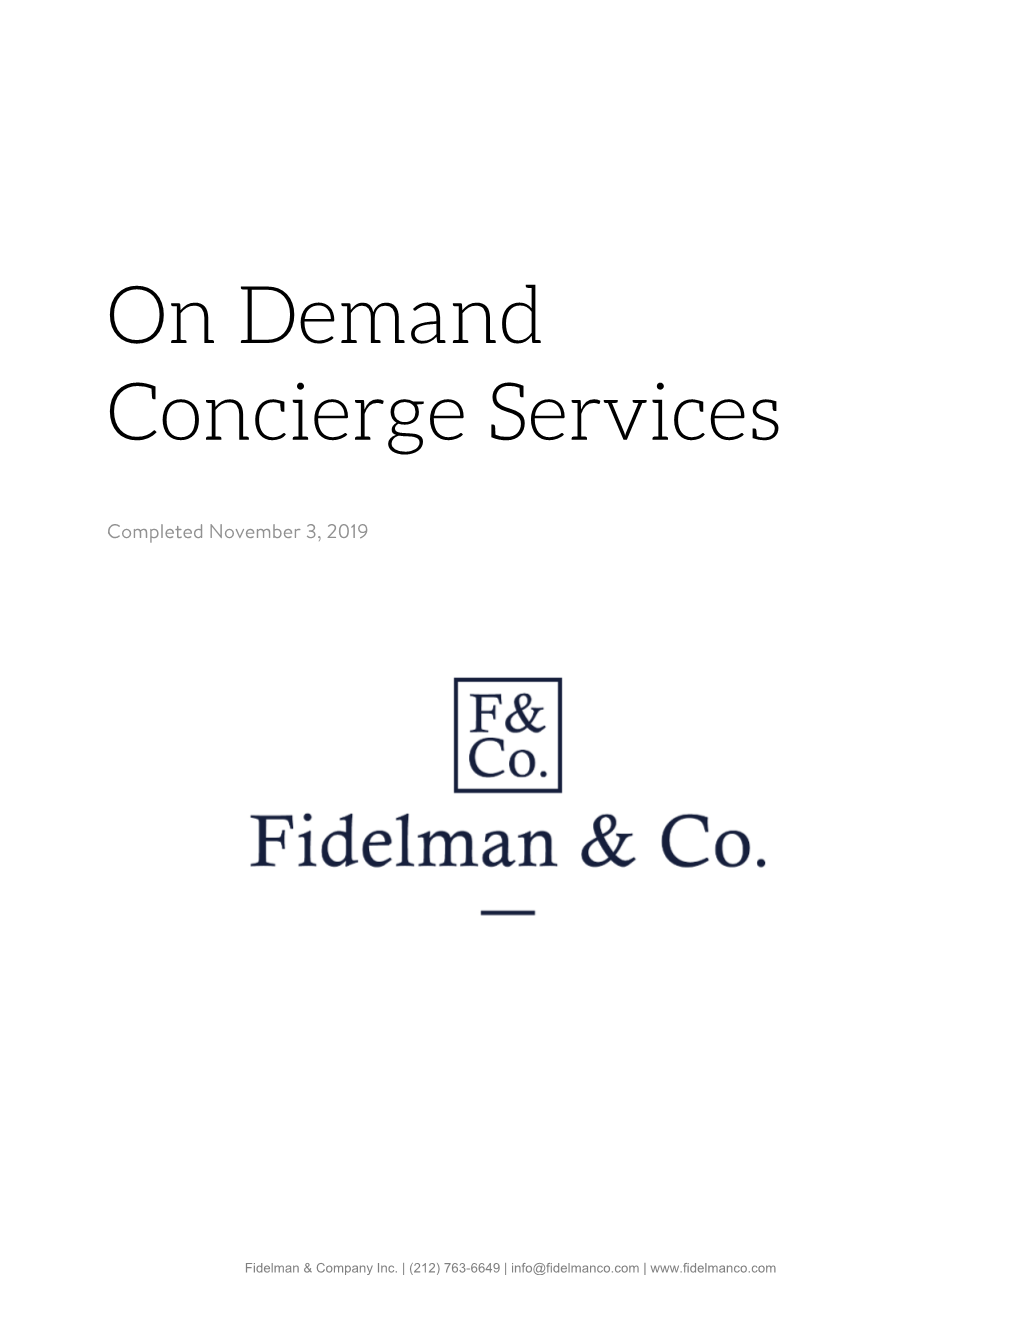 On Demand Concierge Services